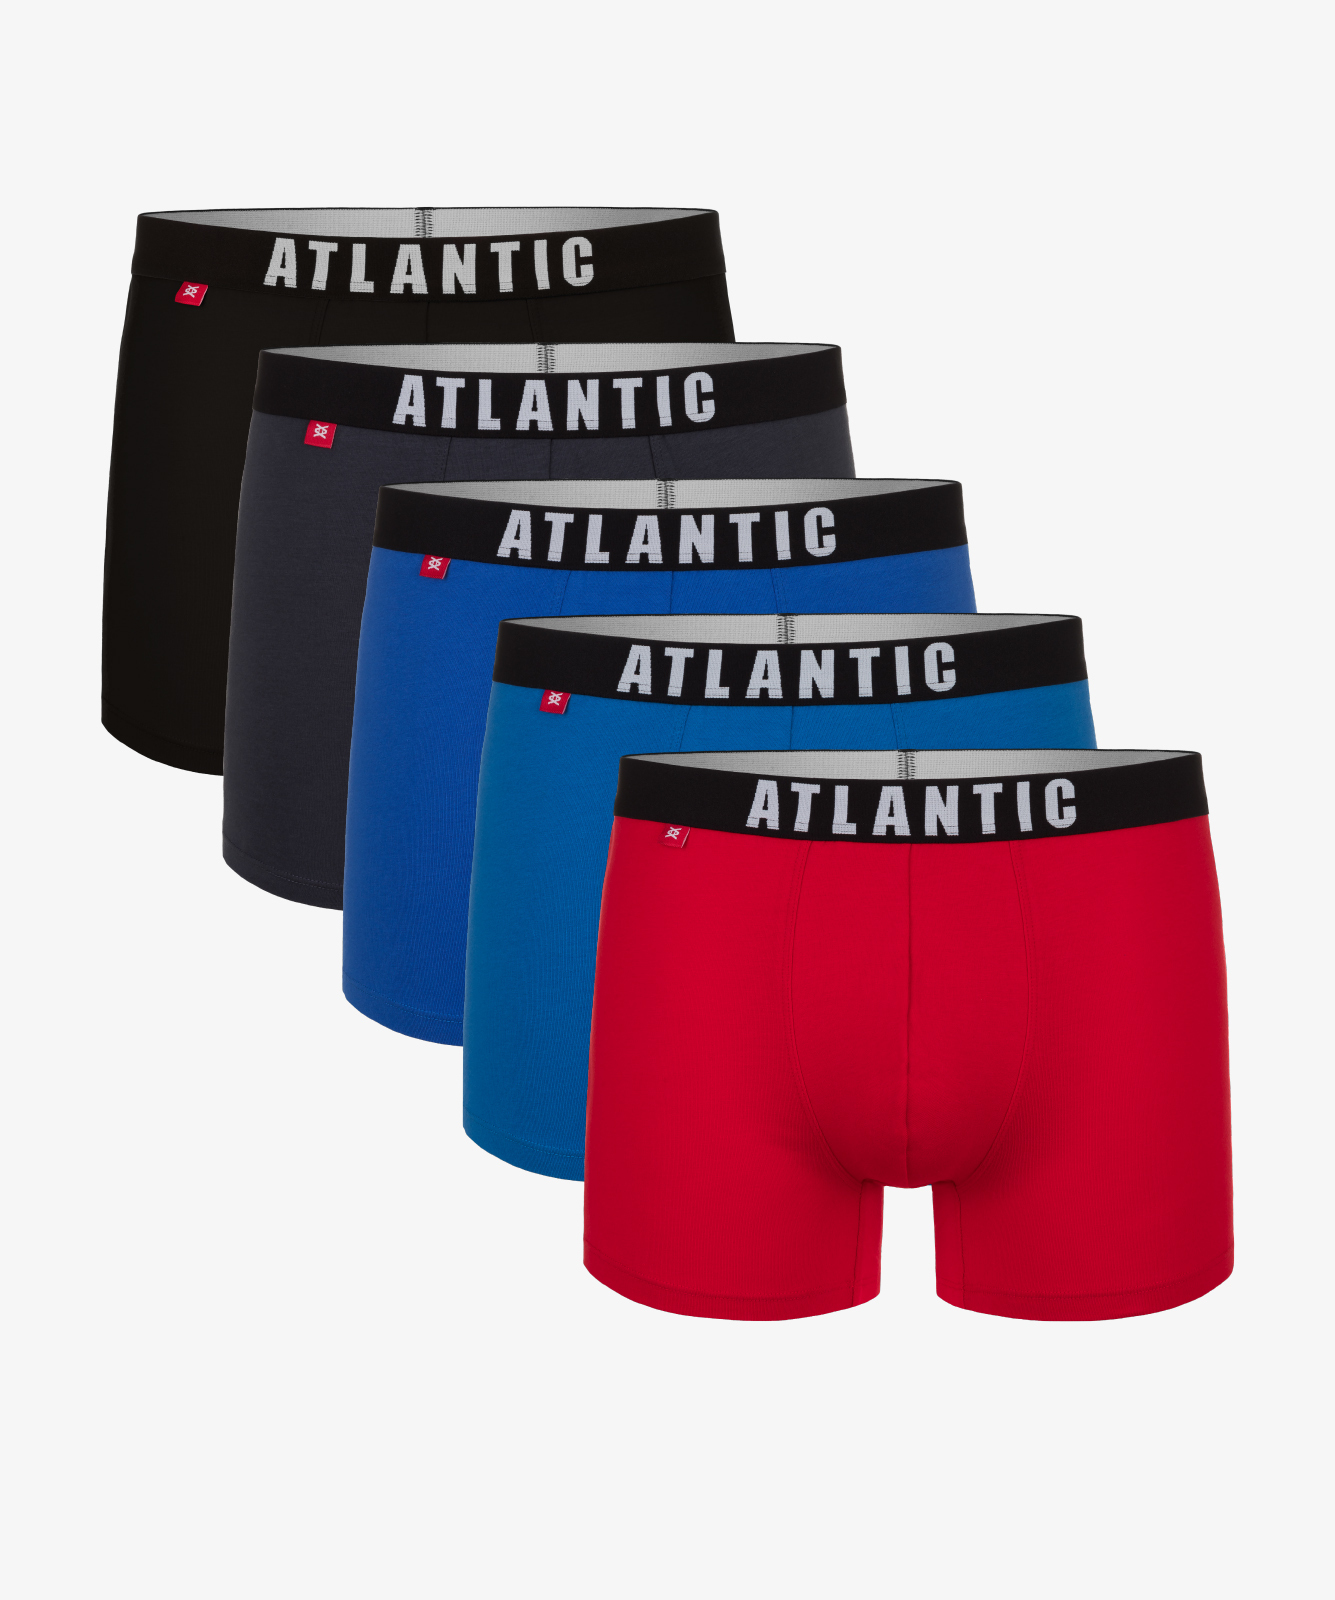 Мужские трусы шорты Atlantic, набор из 5 шт., хлопок, графит + черные + красные + голубые + бирюзовые, 5SMH-004